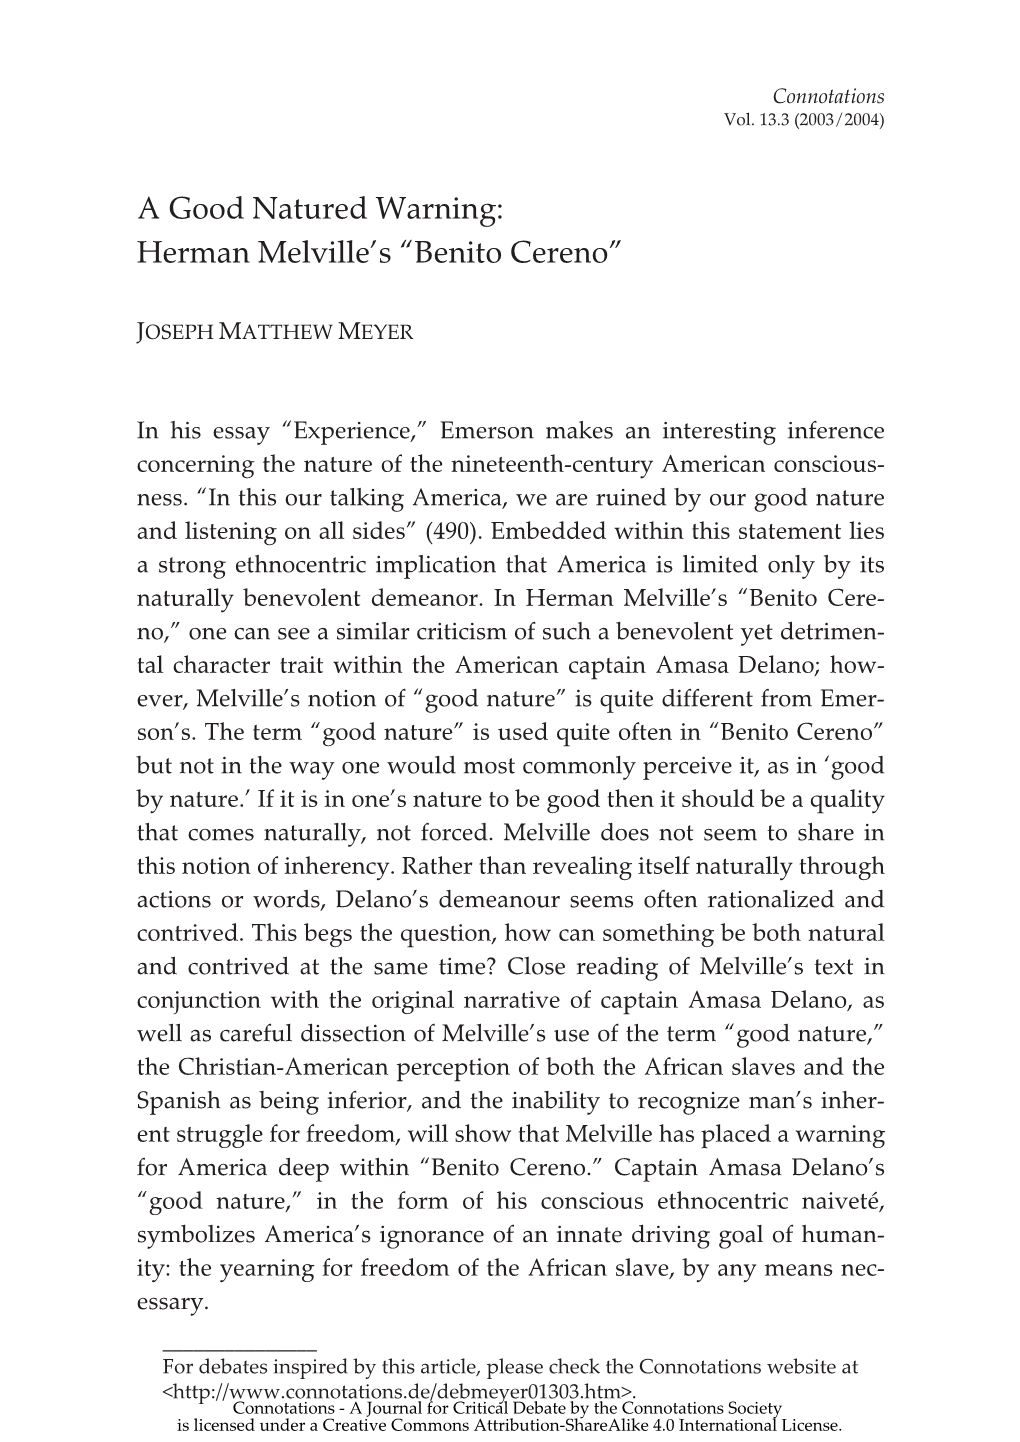 Herman Melville's "Benito Cereno"